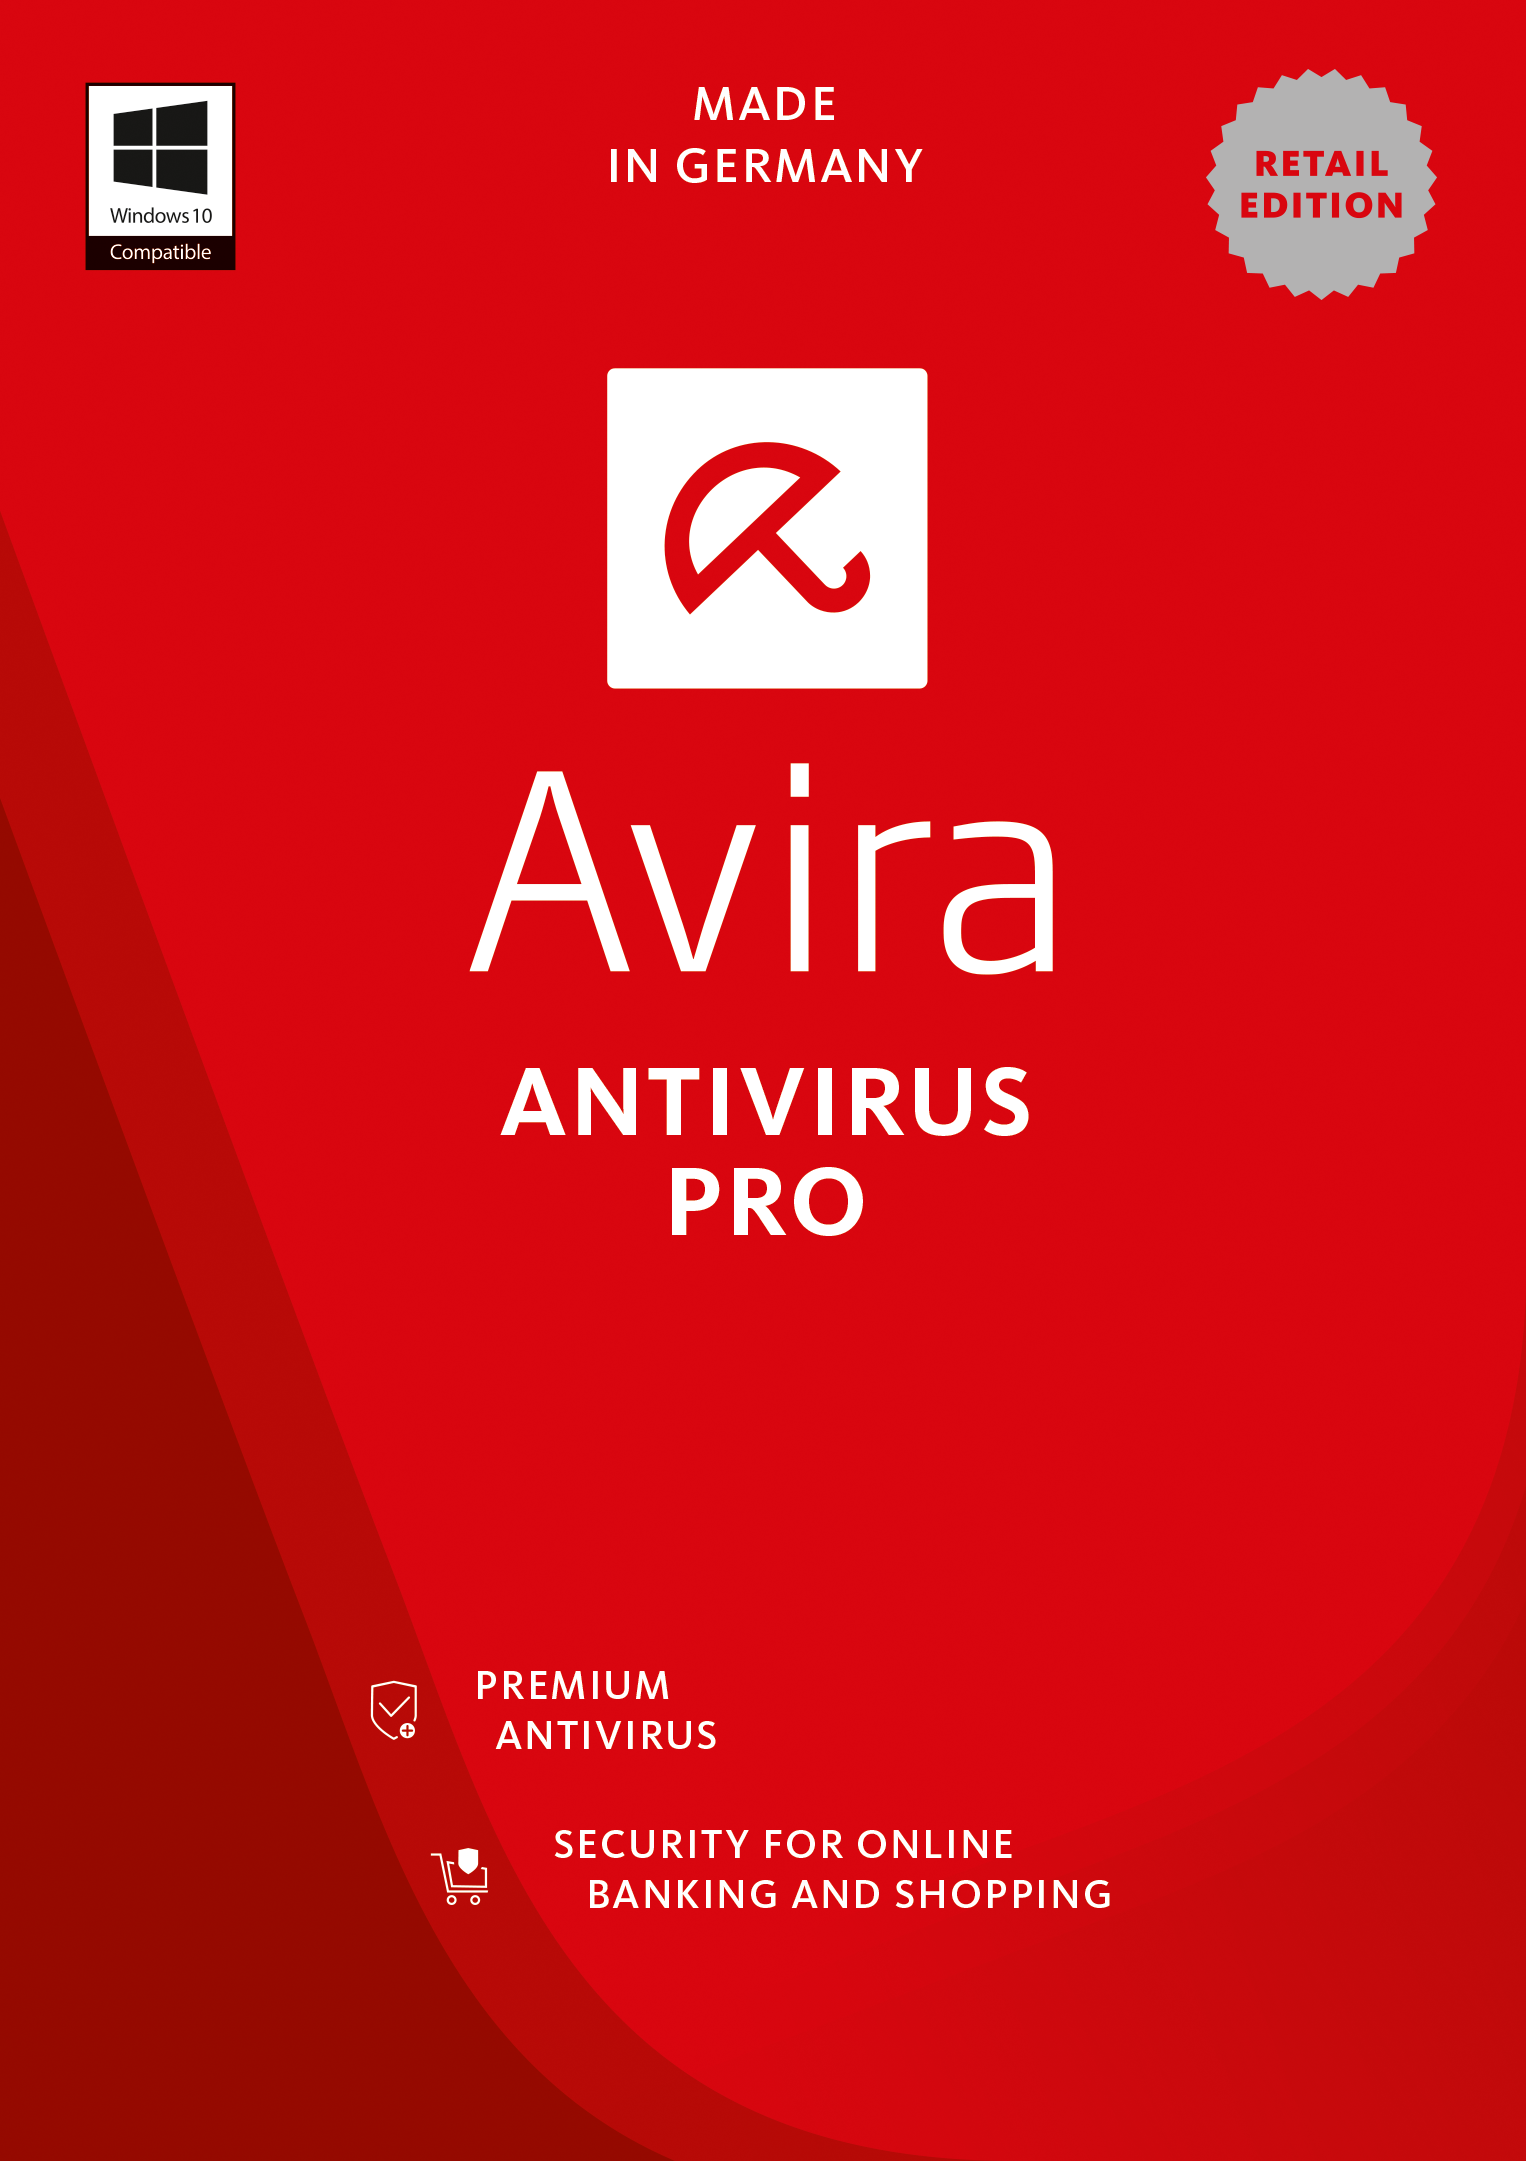 avira 2017 - download free antivirus for pc & mac